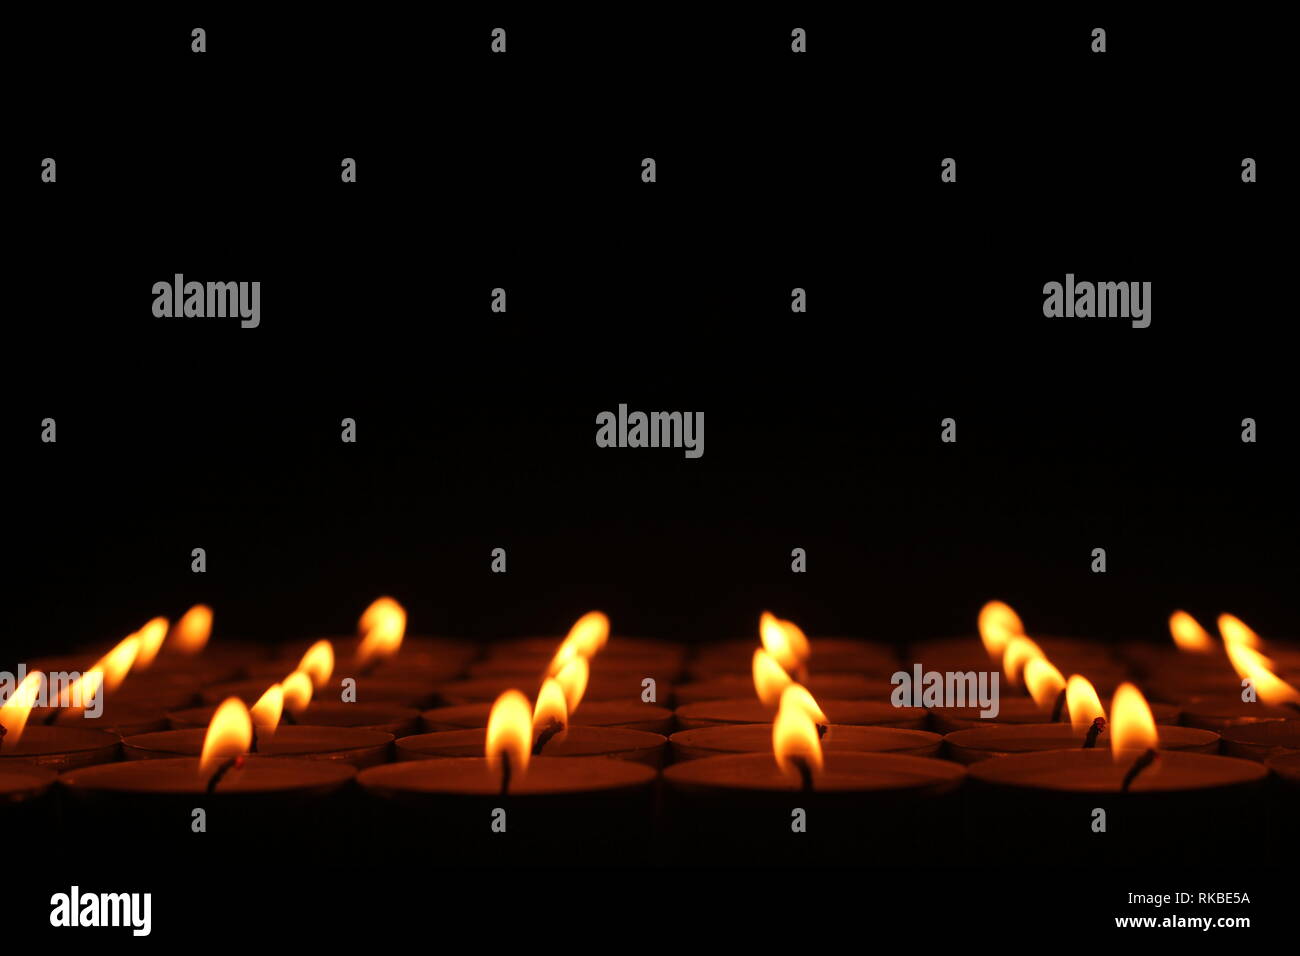 Une image libre de droit de rangées de bougies qui semblent aller l'un pour toujours, avec une partie supérieure noire. Banque D'Images